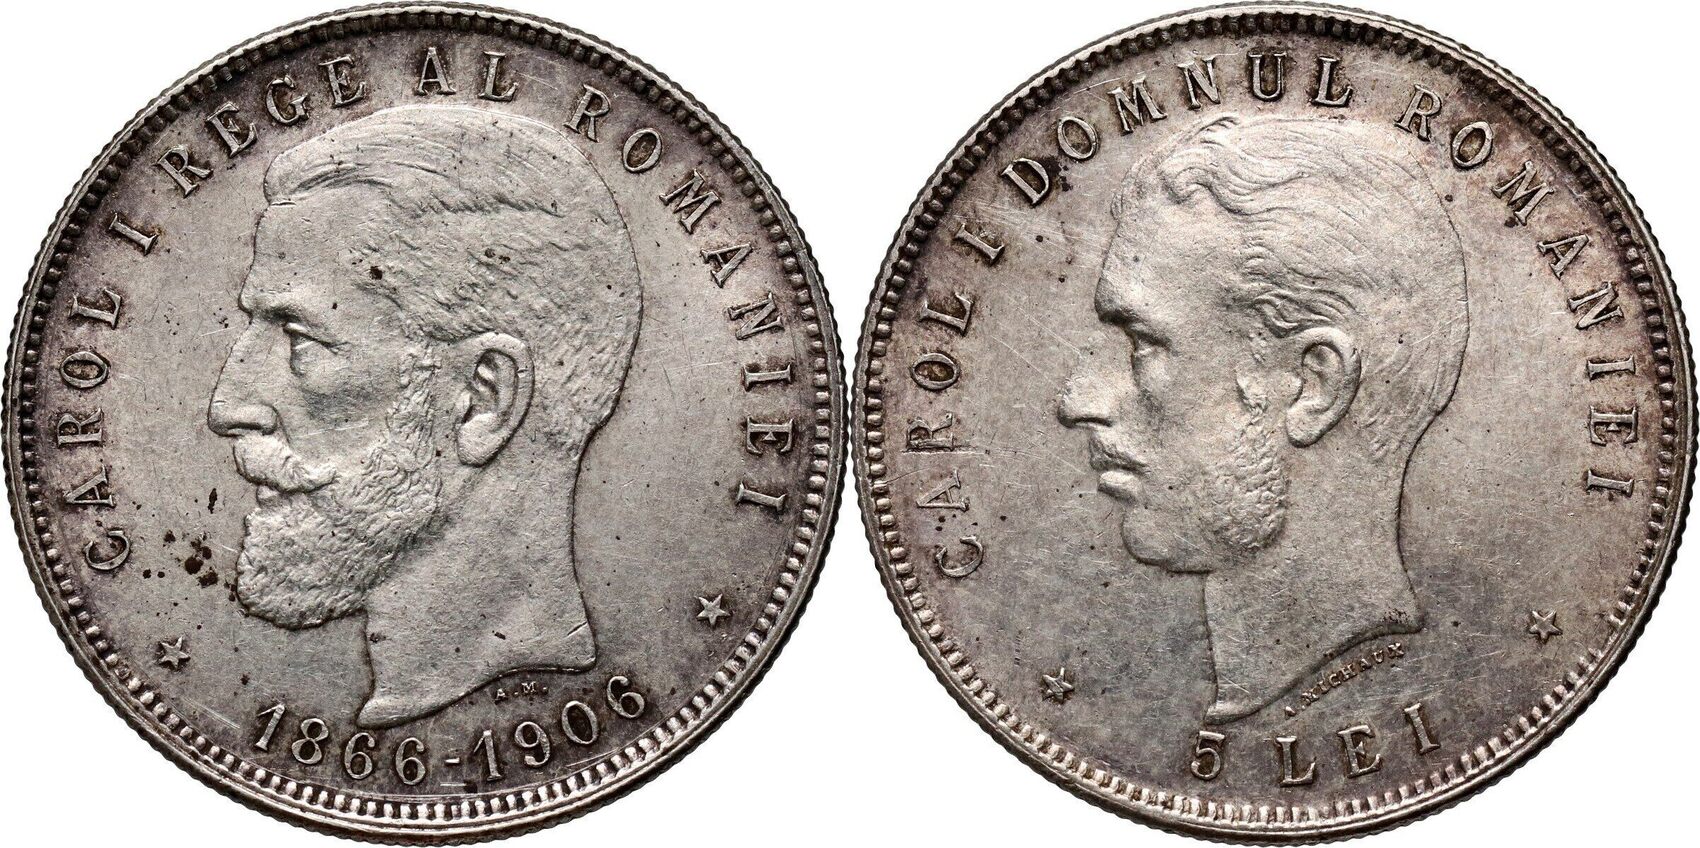 5 лей в рублях. Patagon 1673 Brussel Mint.